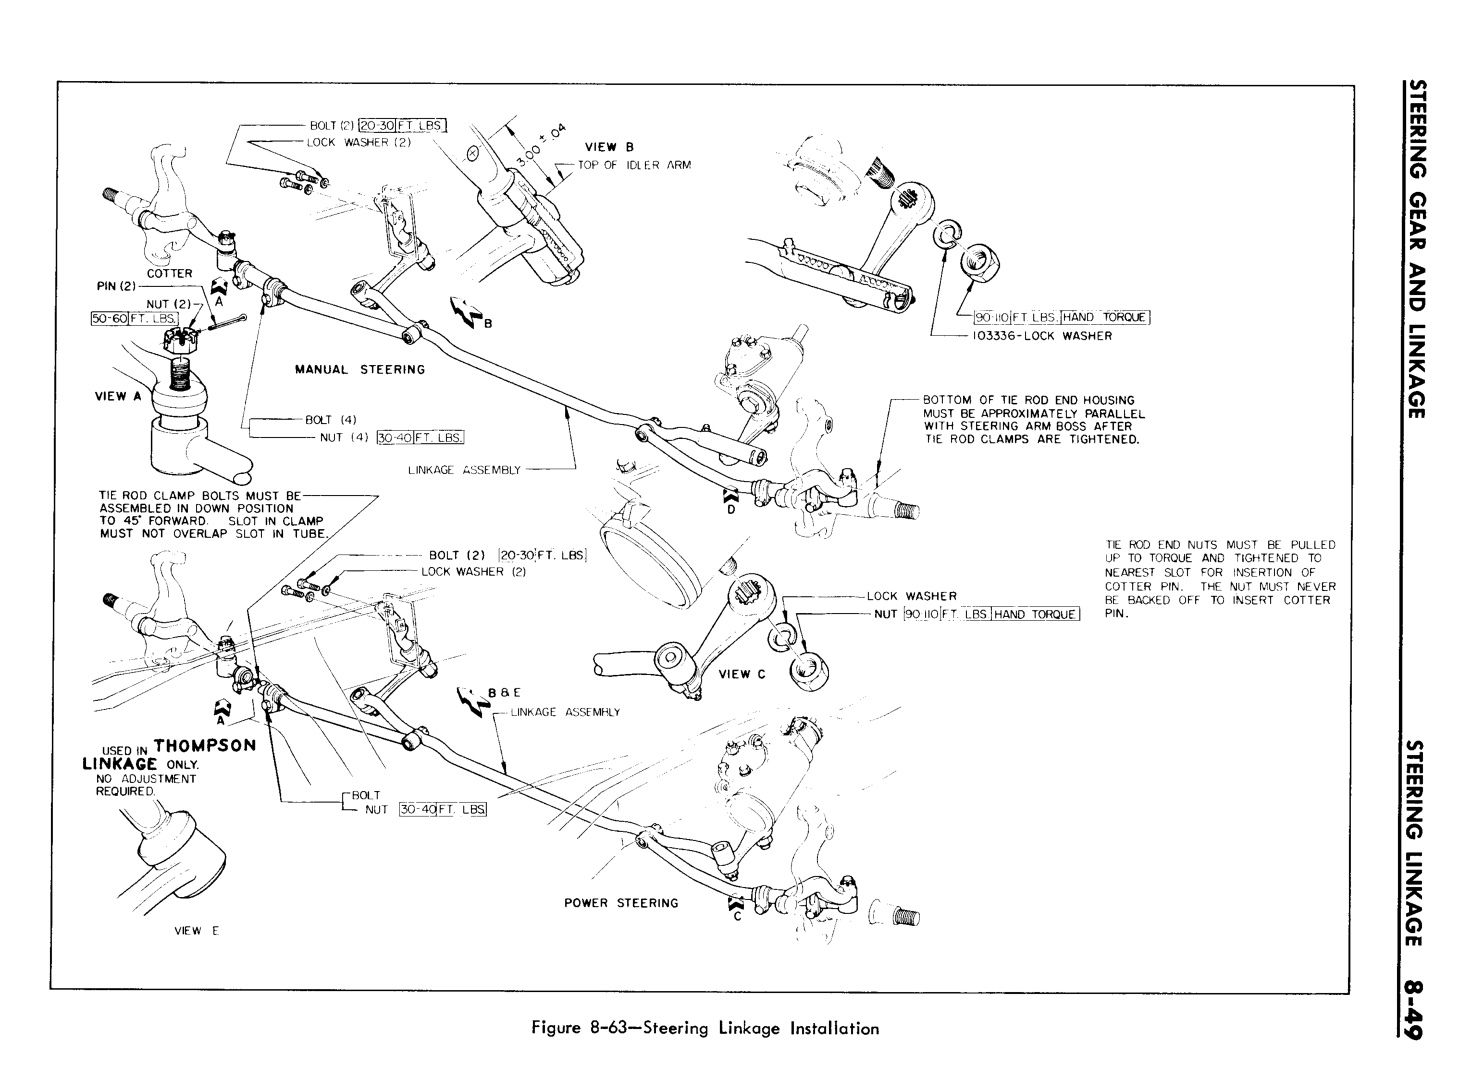 n_08 1961 Buick Shop Manual - Steering-049-049.jpg